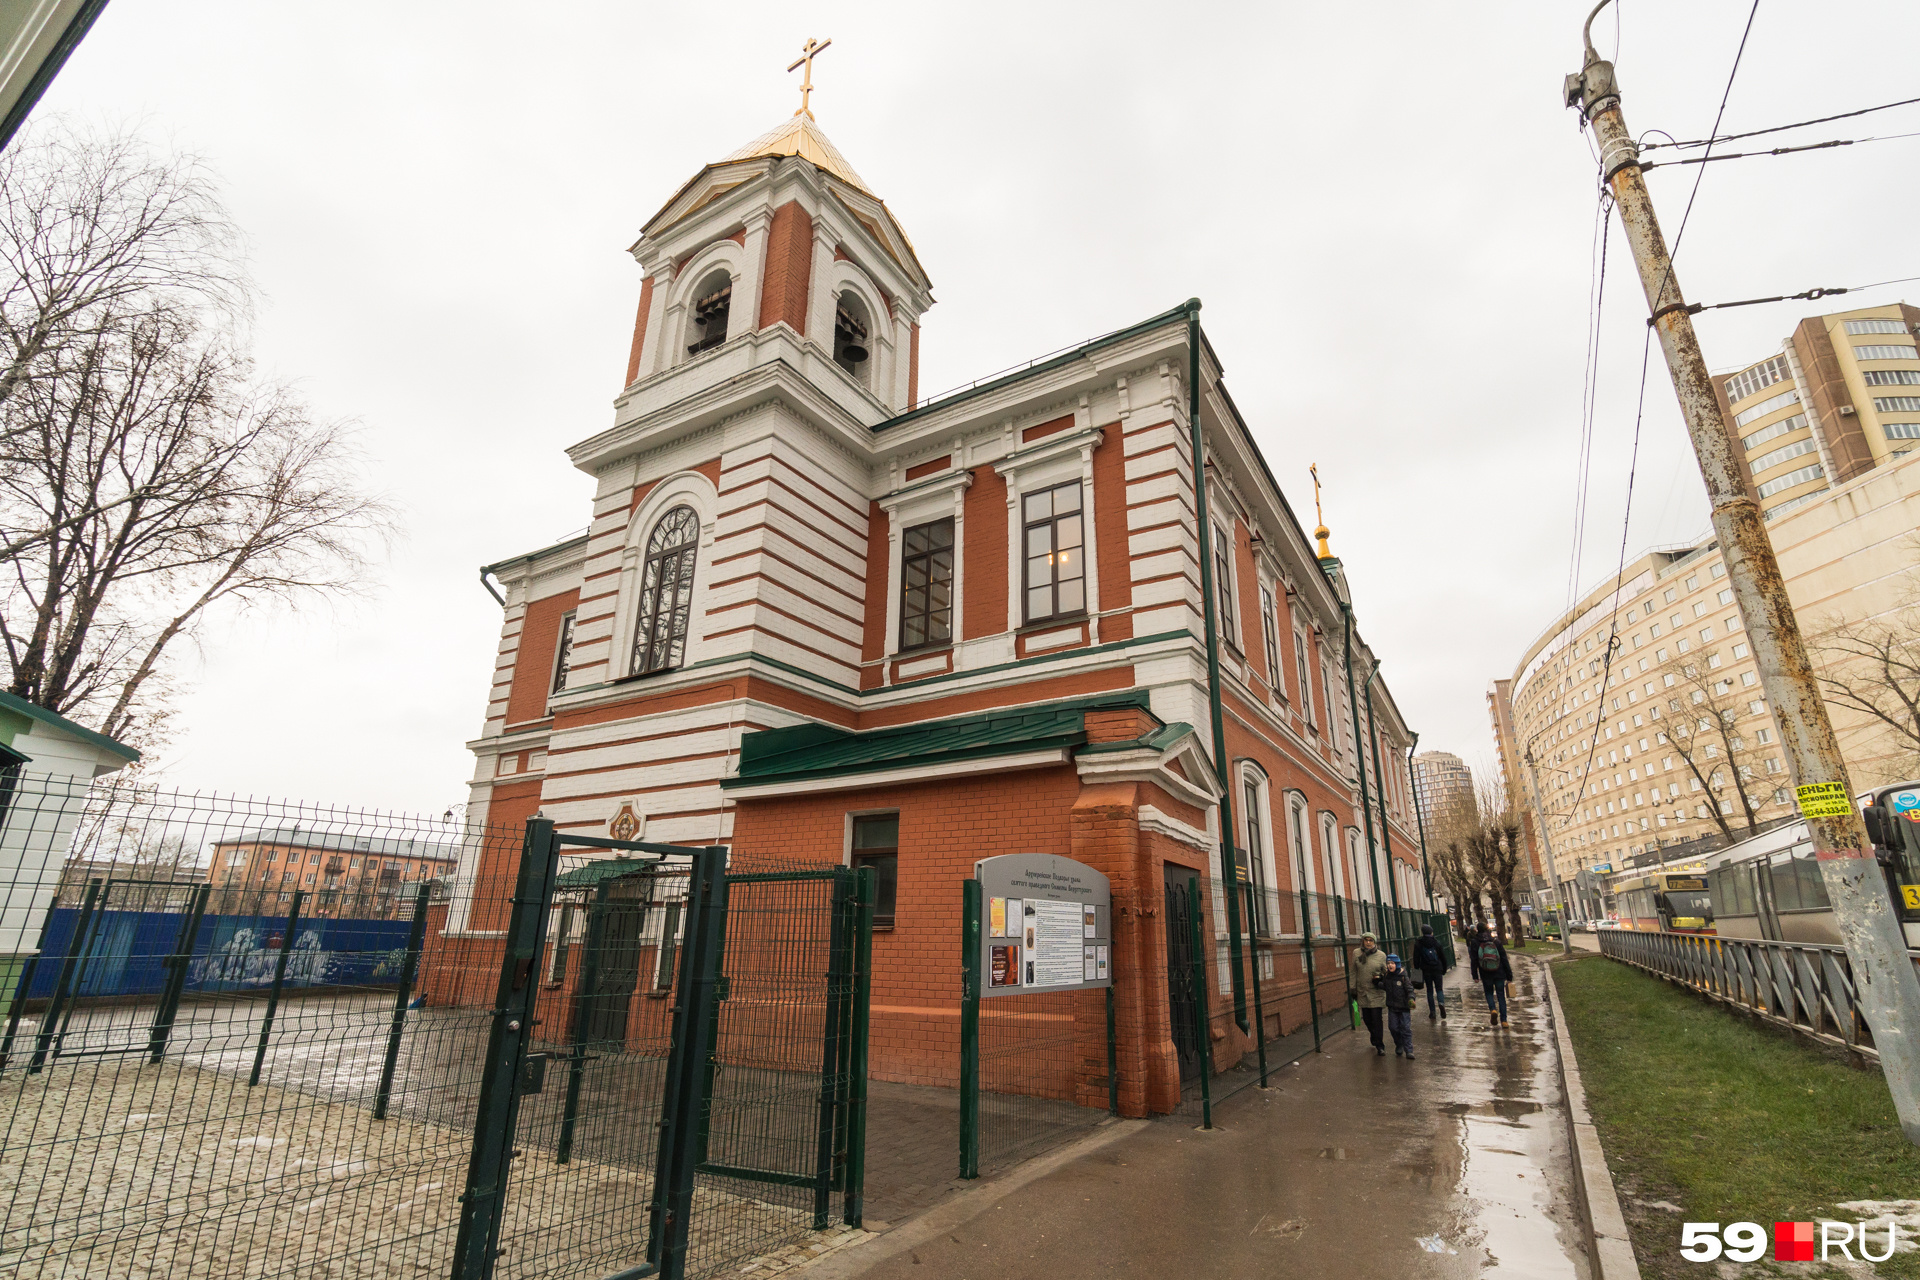 «Колыбель» находится в помещении православного храма, но помогают там людям с любым вероисповеданием